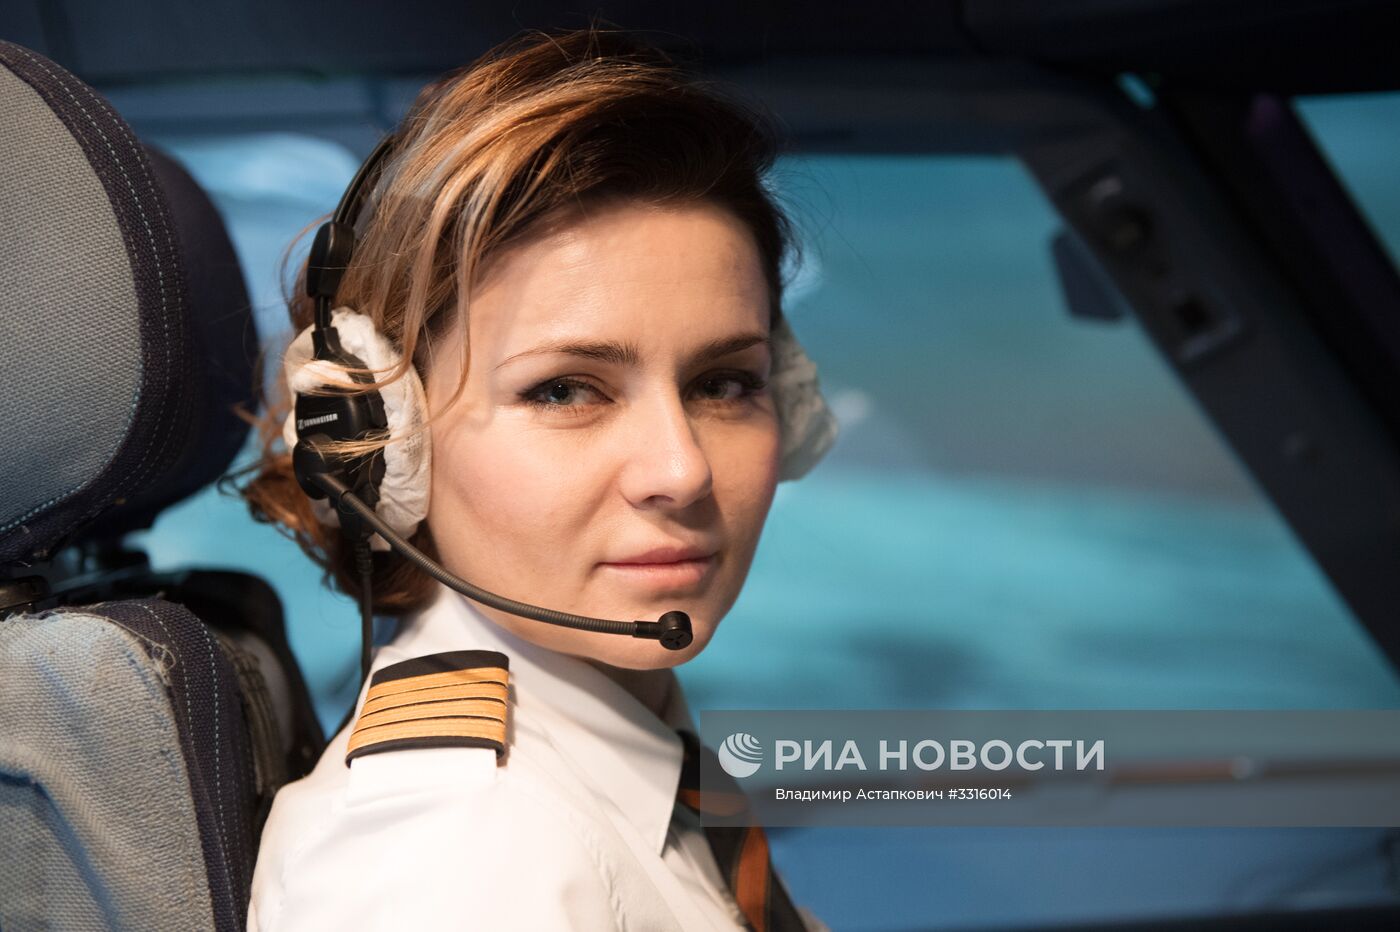 "Неженская" профессия. Командир воздушного судна Airbus A320 Мария Уваровская